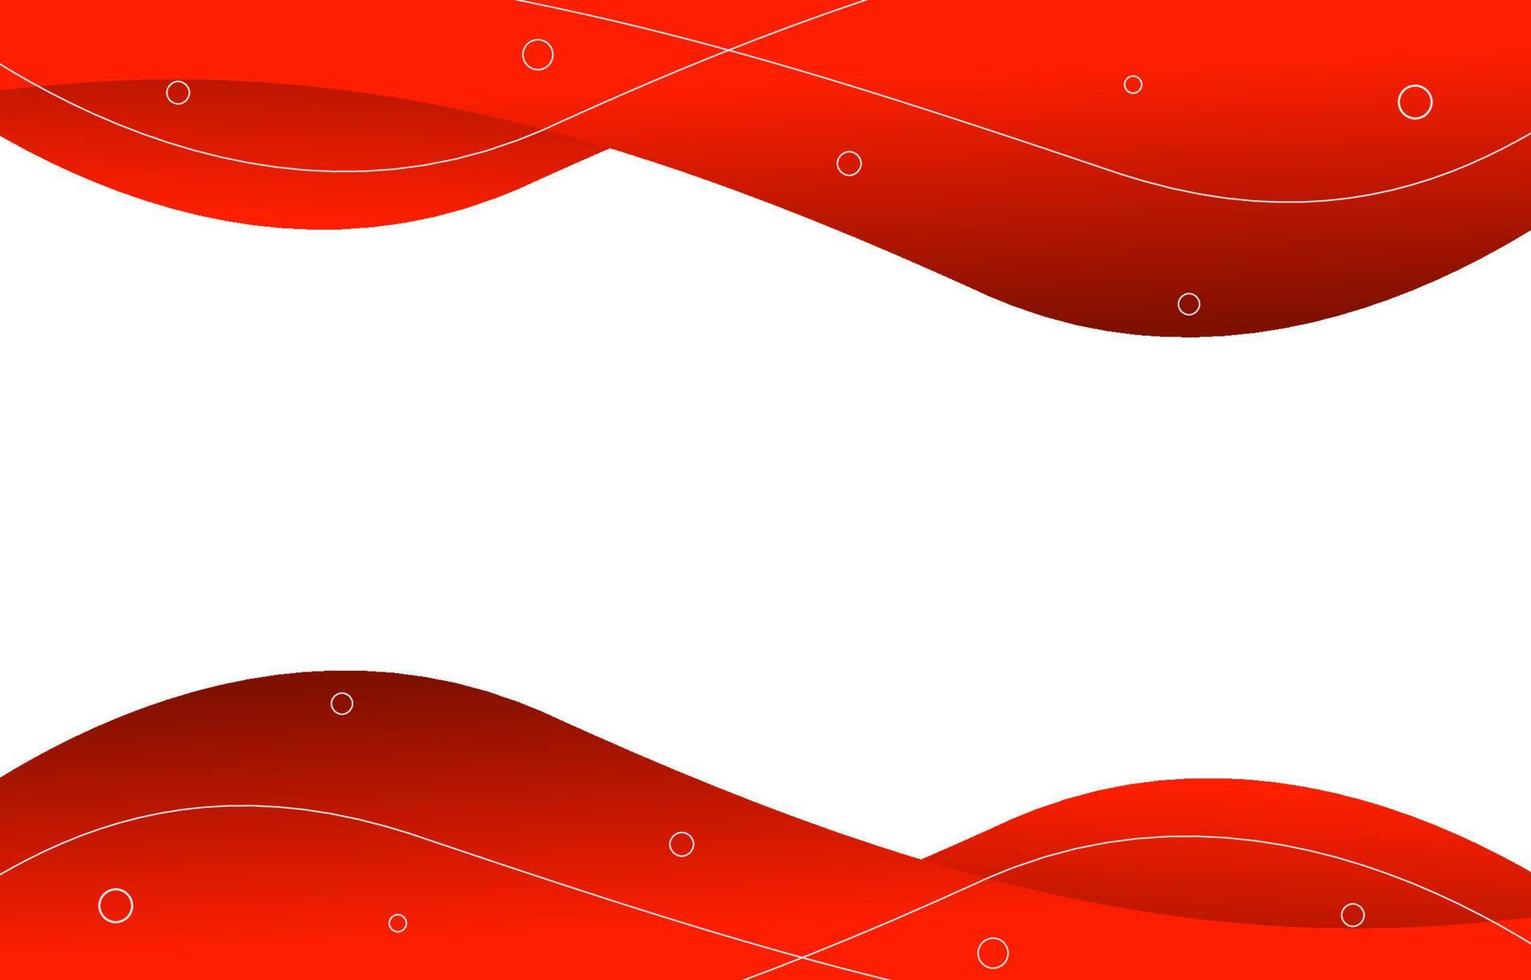 abstrakter hintergrund der roten kurvengrenze auf weißem schablonenhintergrund. anpassbar für Banner, Cover, Urkunde vektor